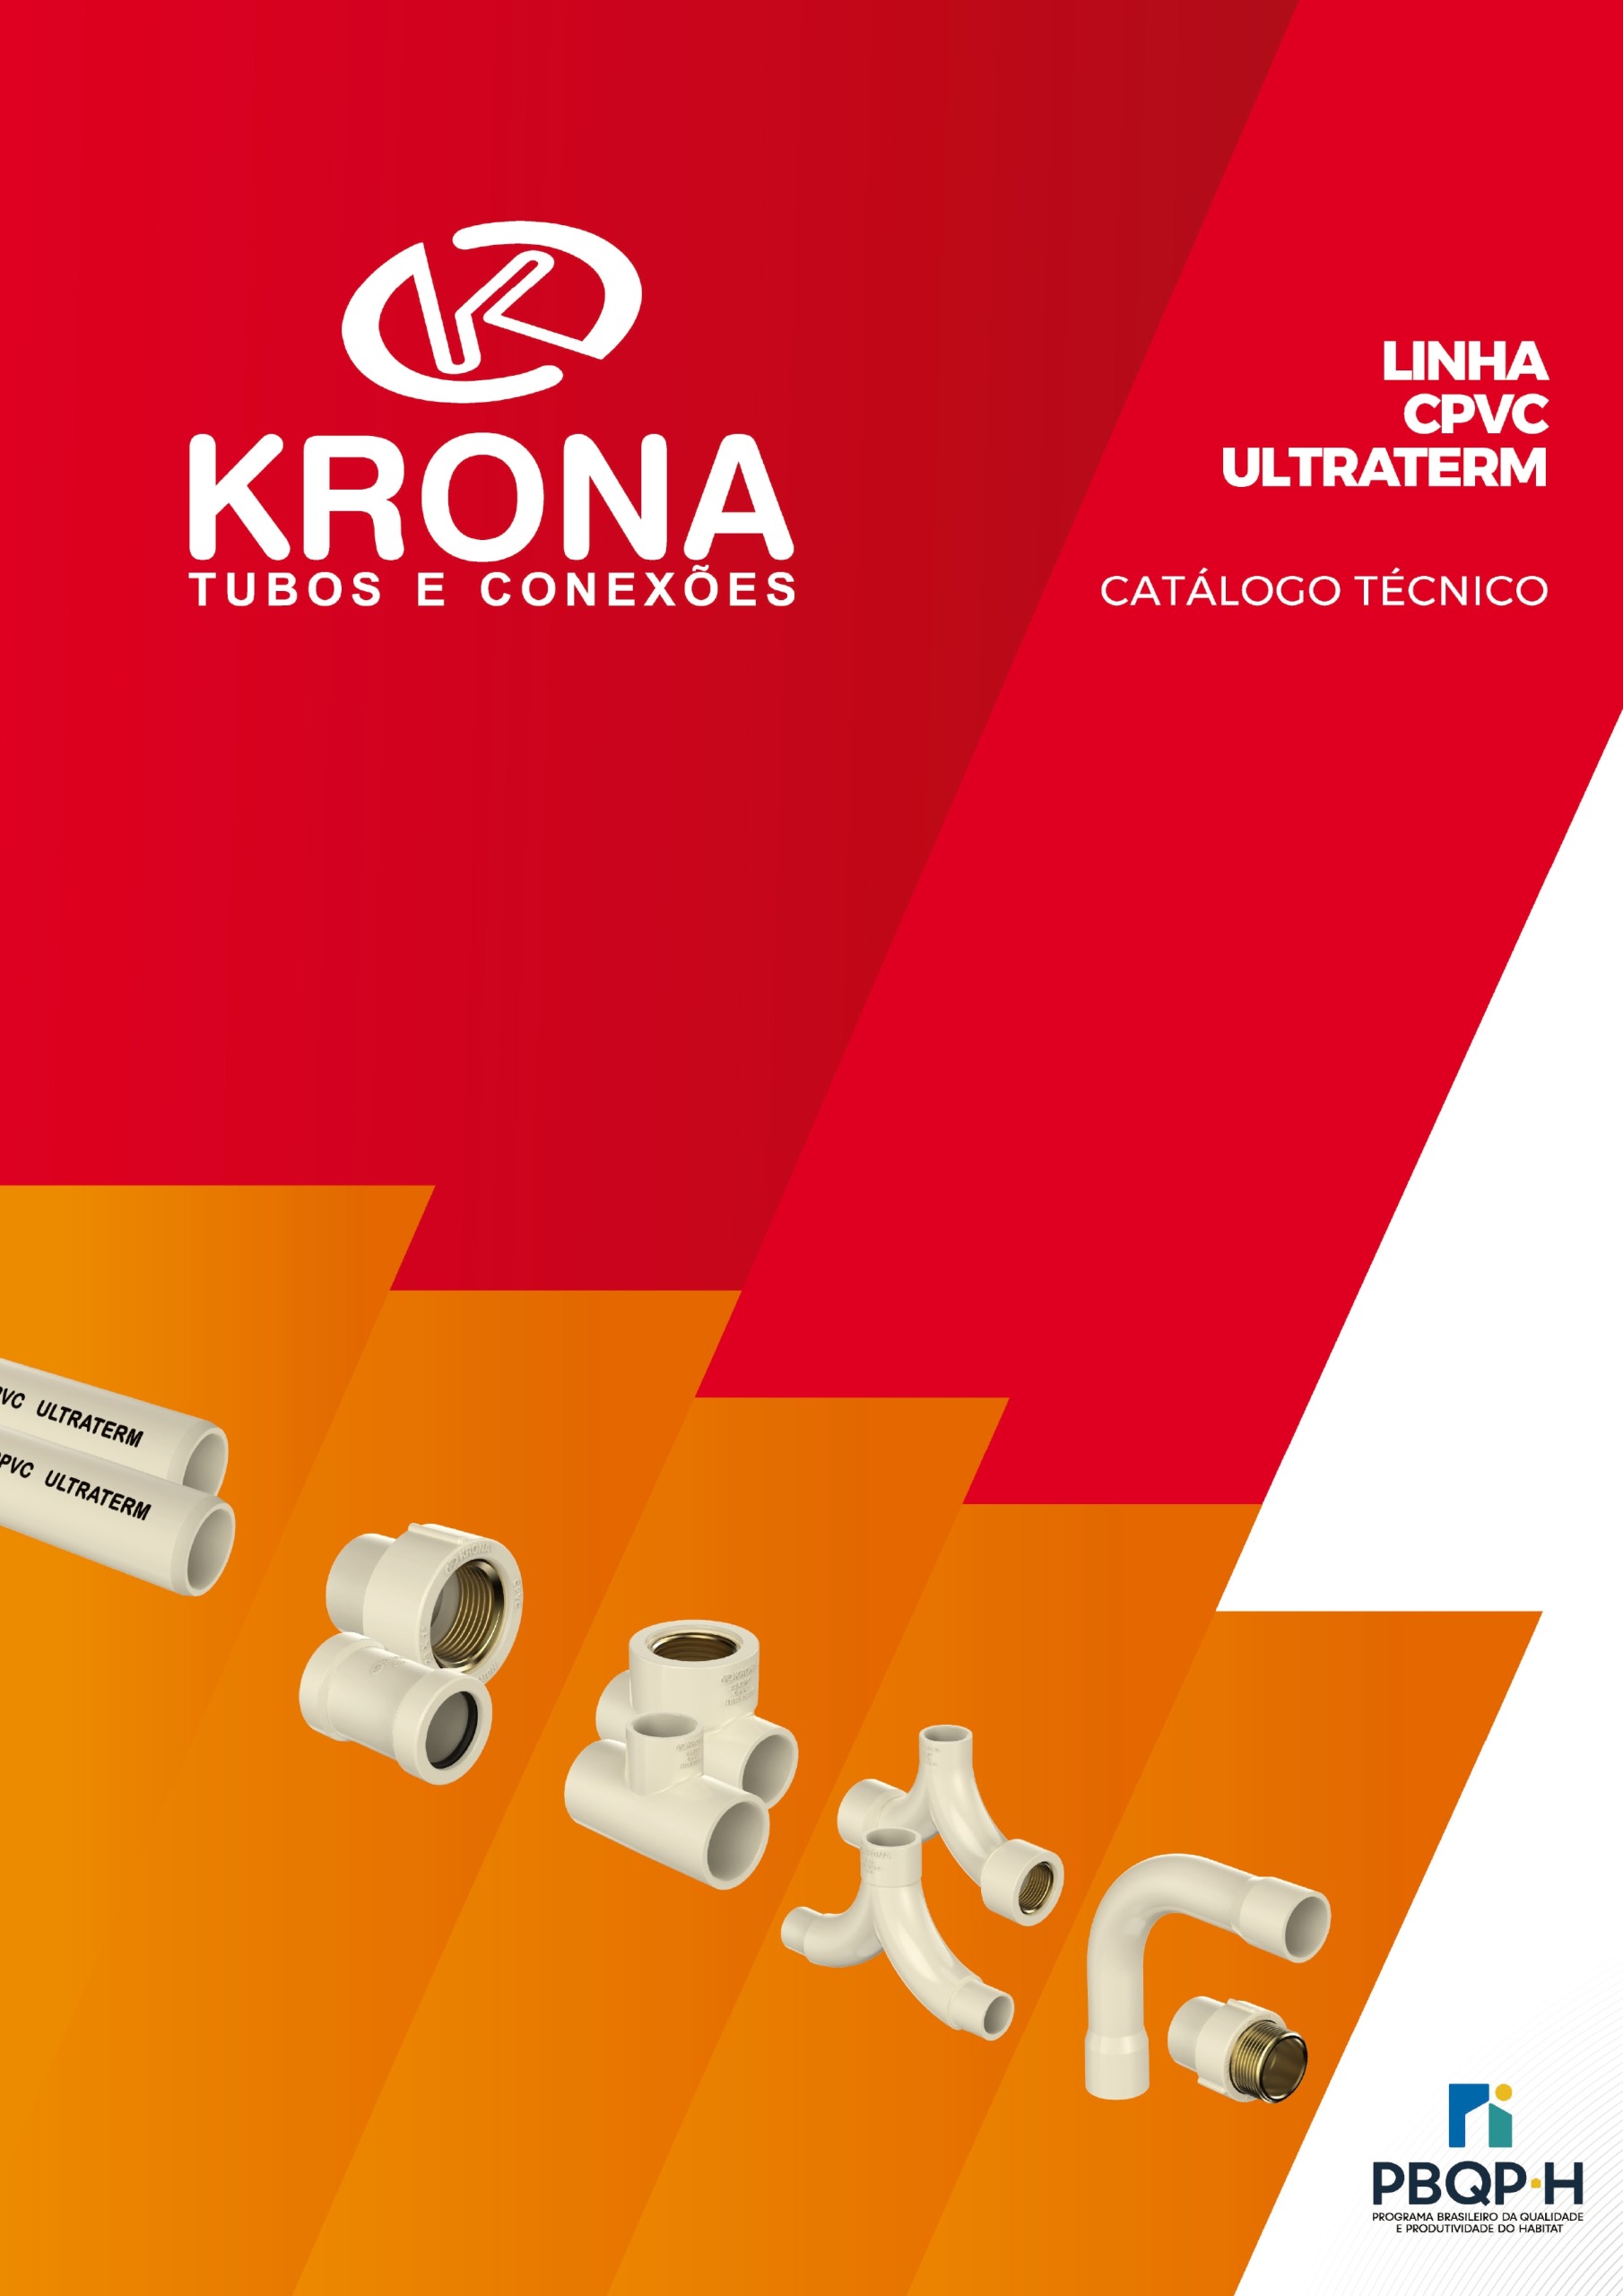 Catálogo Técnico CPVC Ultraterm Krona®